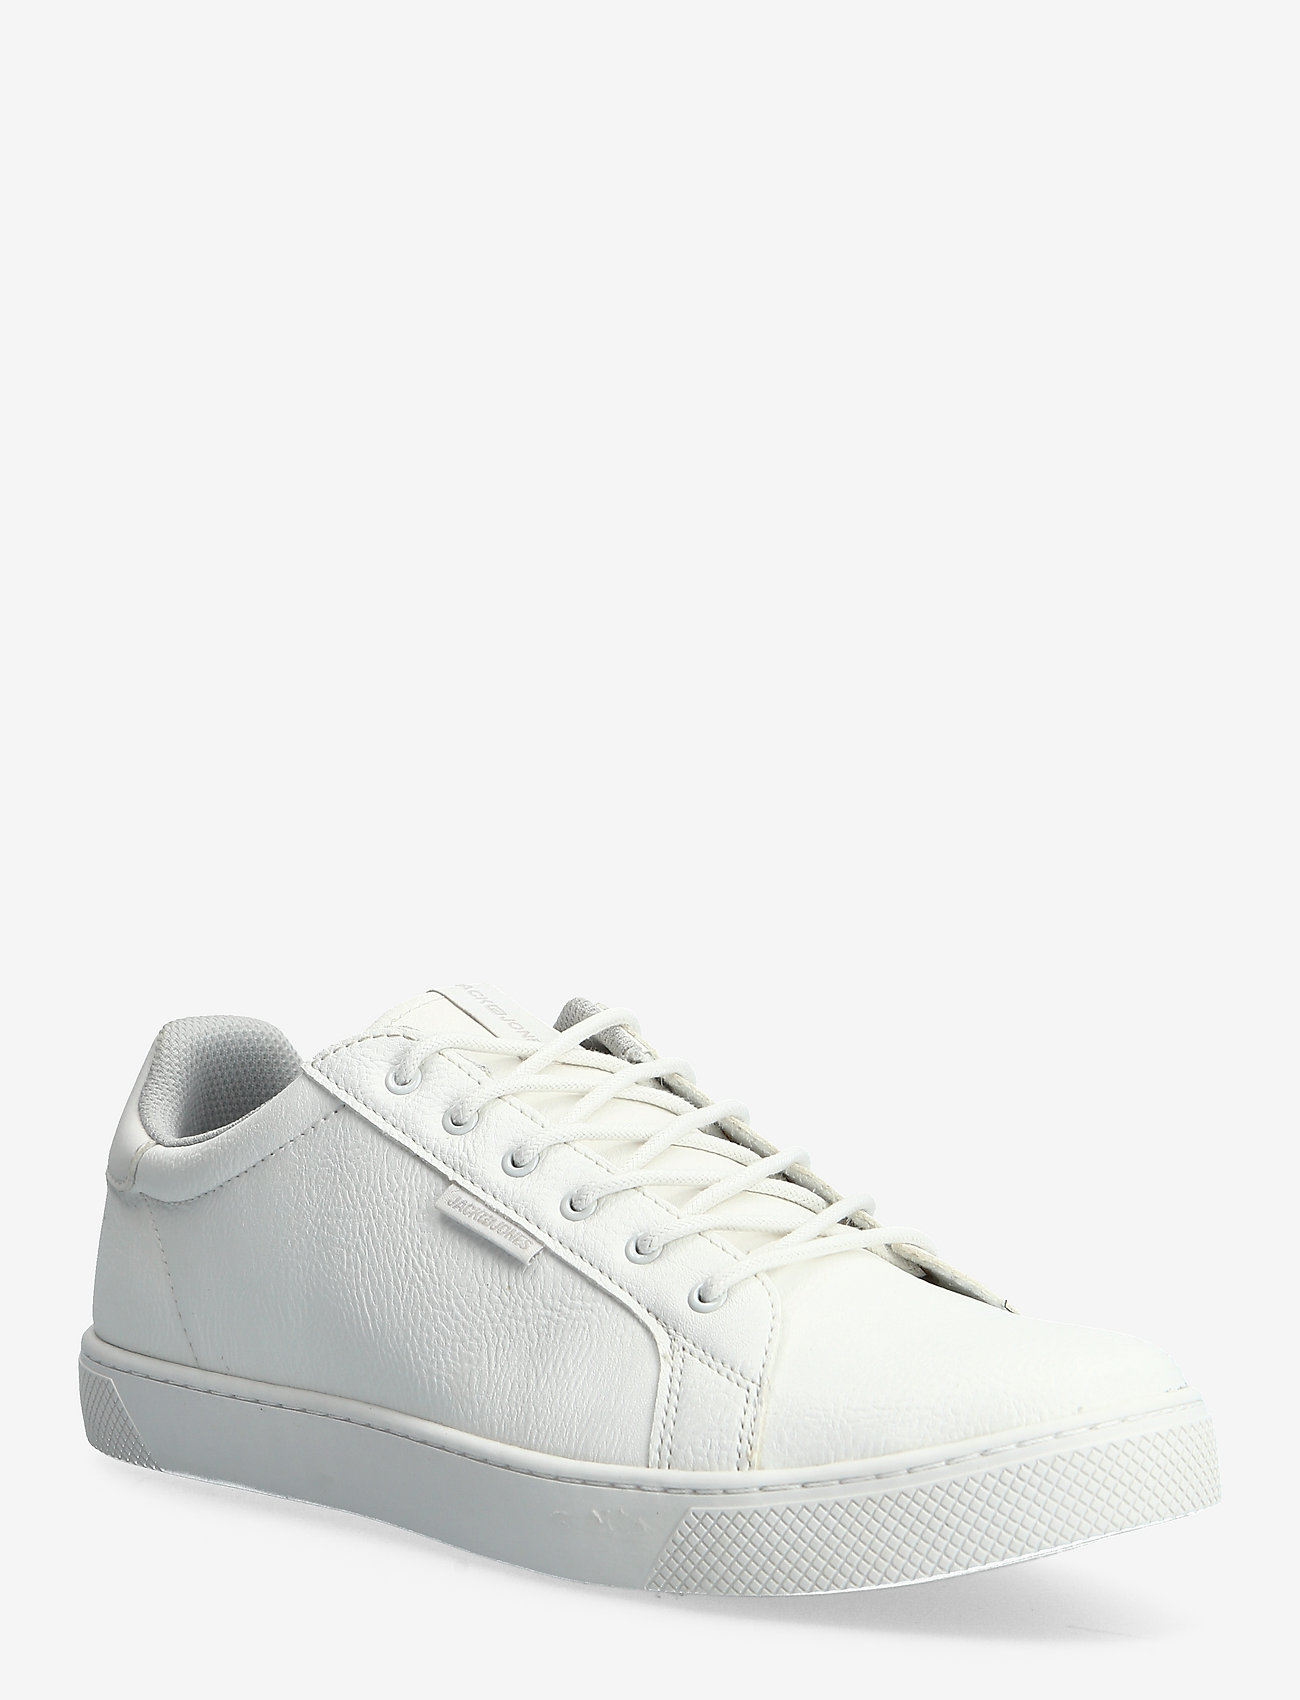 Jack & Jones - JFWTRENT BRIGHT WHITE 19 - låga sneakers - bright white - 0